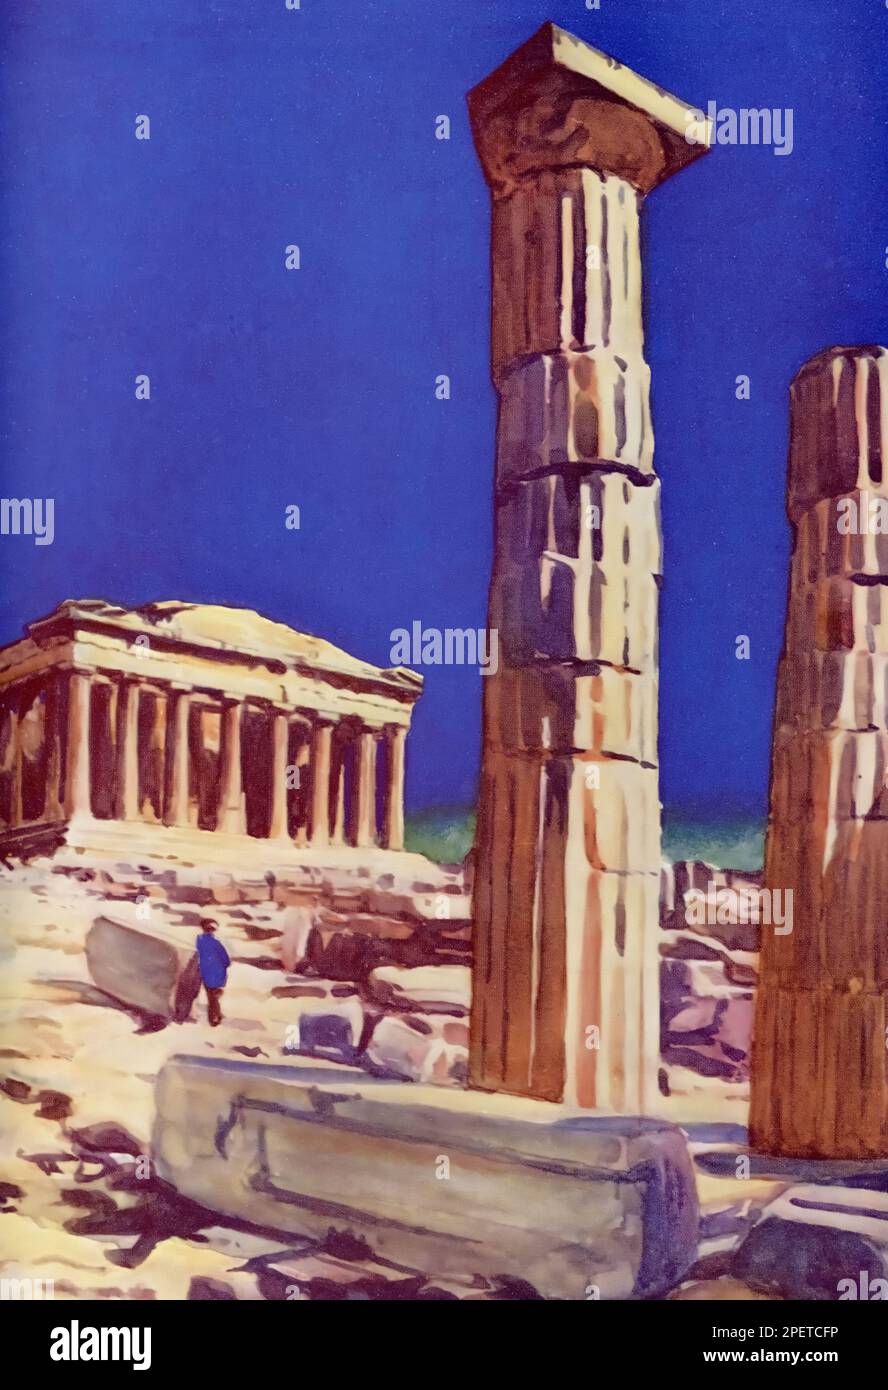 Le Parthénon, Athènes, vu de la Propylaïa, c1937. Le Parthénon est un ancien temple sur l'Acropole athénienne, Grèce, qui a été consacré à la déesse Athéna pendant le cinquième siècle avant Jésus-Christ. Banque D'Images